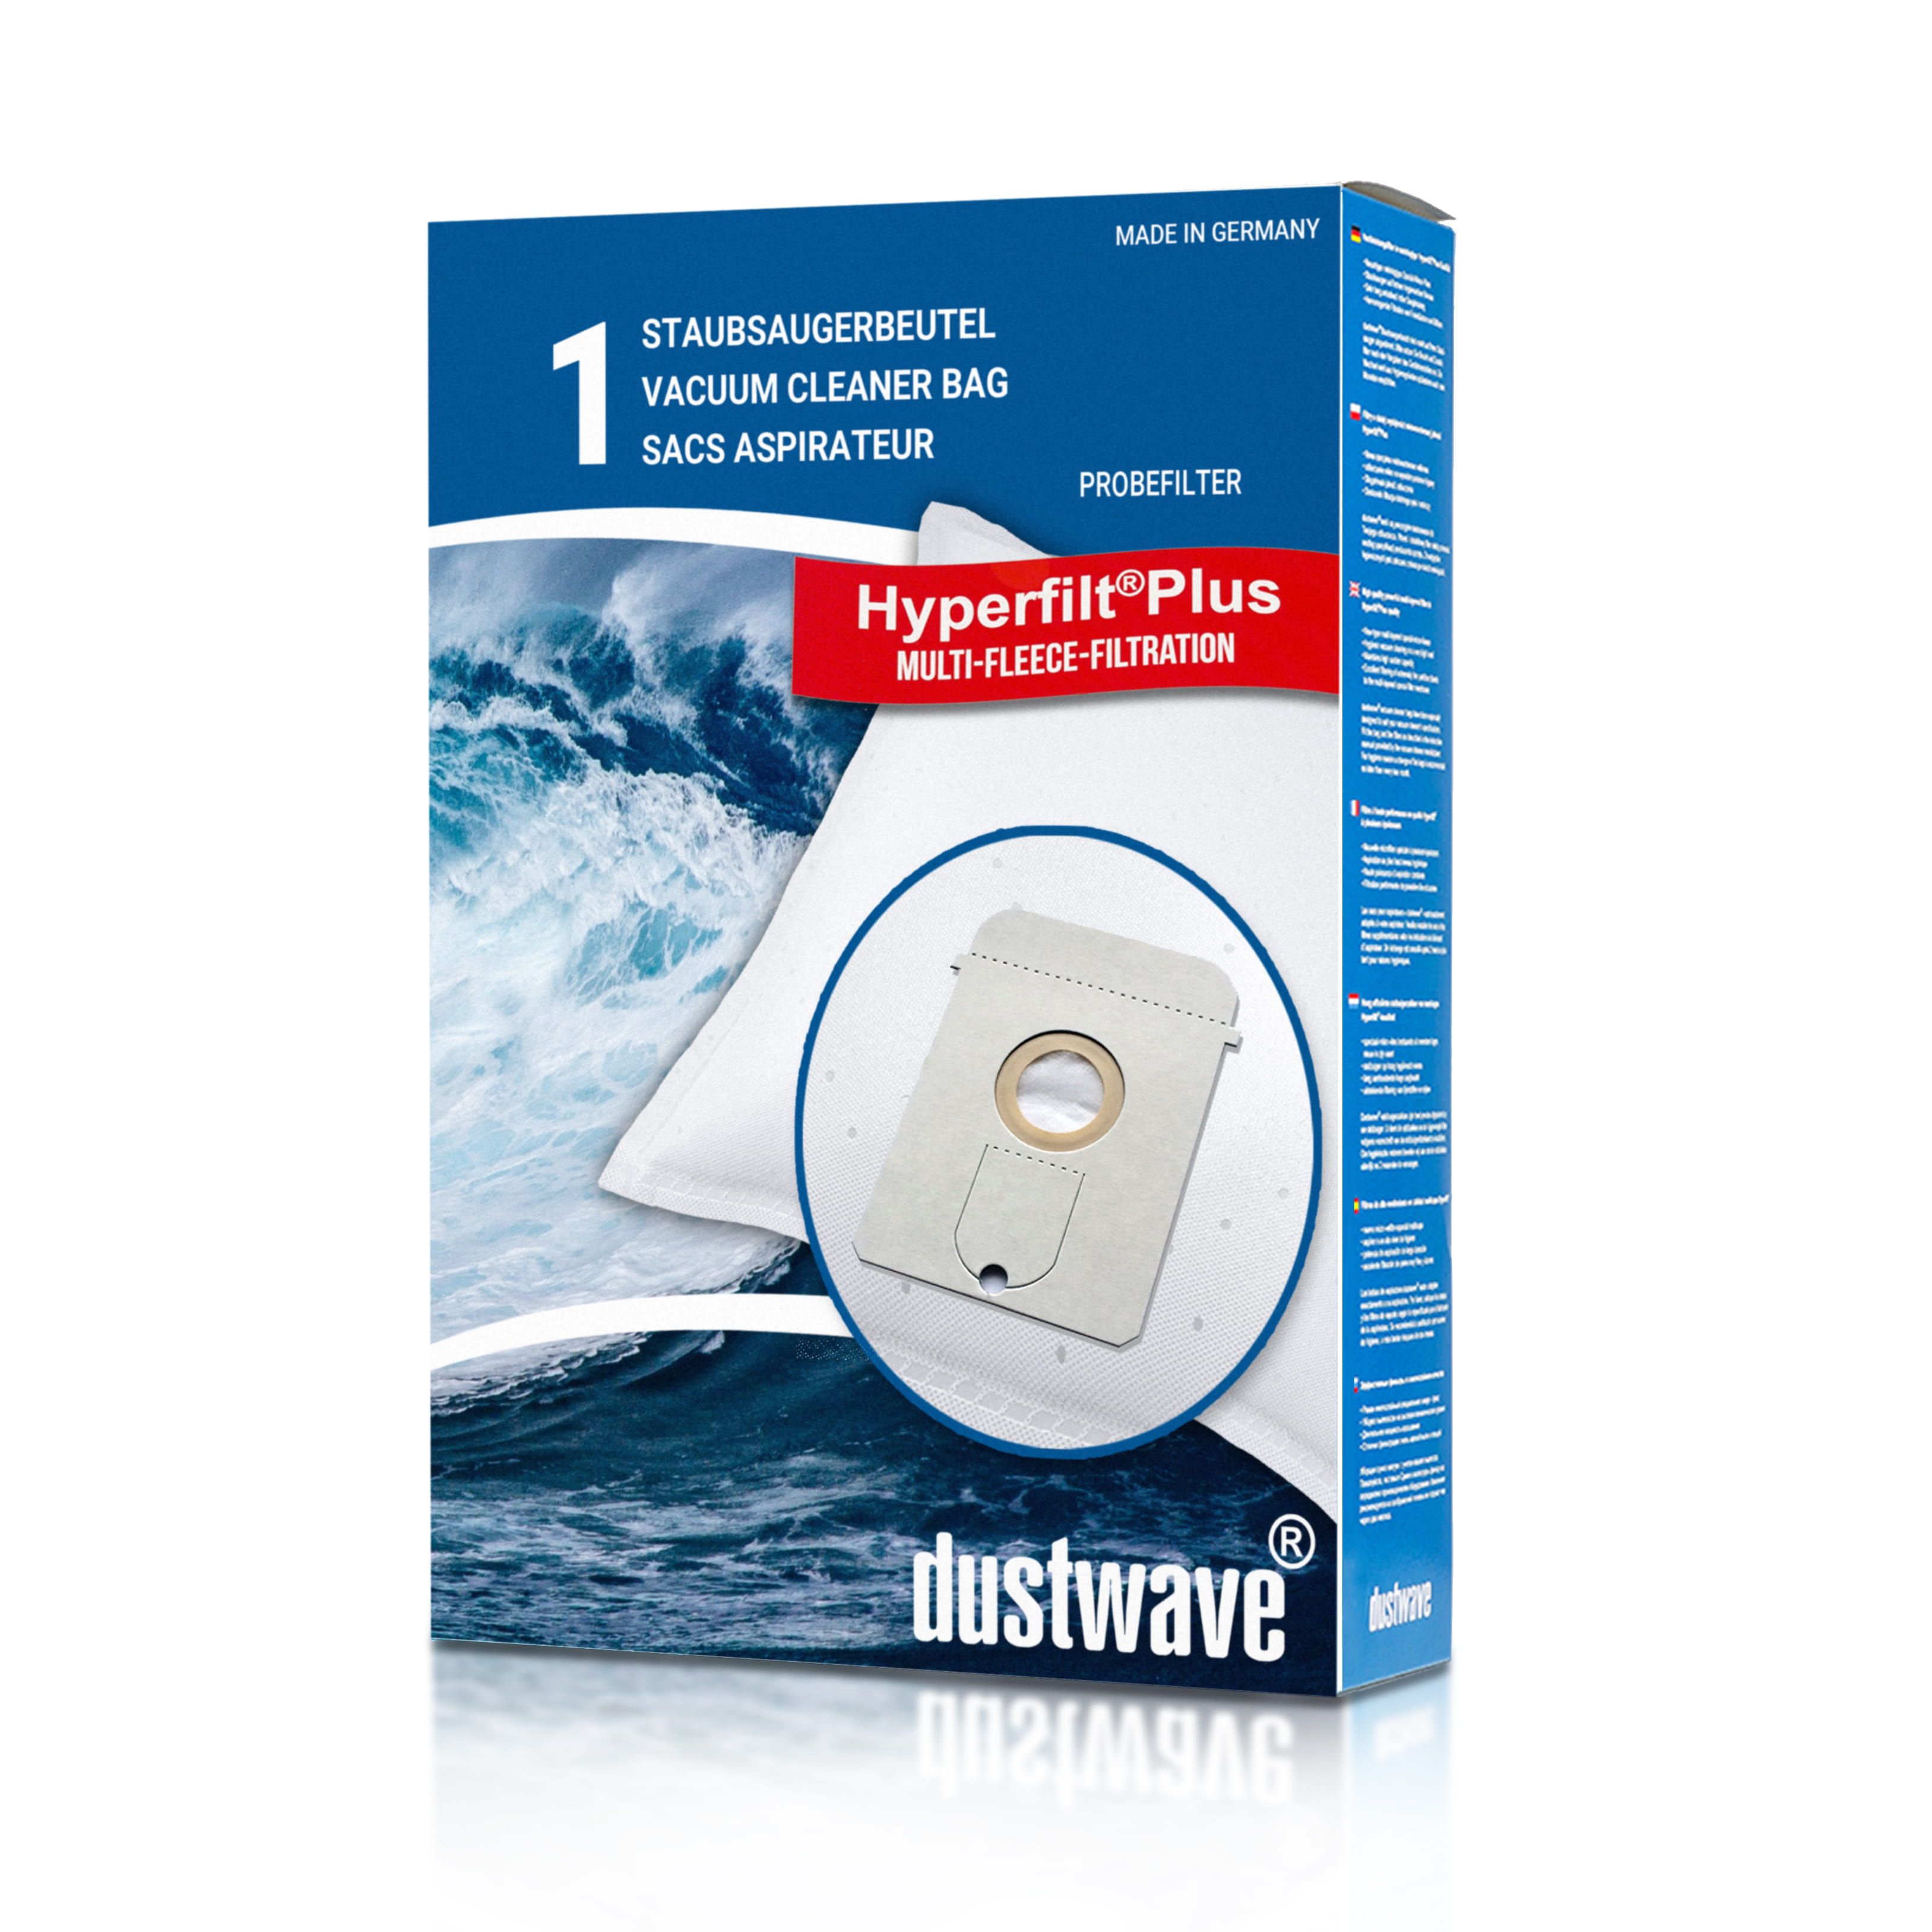 Dustwave® 1 Staubsaugerbeutel für AquaPur AE 800 - hocheffizient, mehrlagiges Mikrovlies mit Hygieneverschluss - Made in Germany